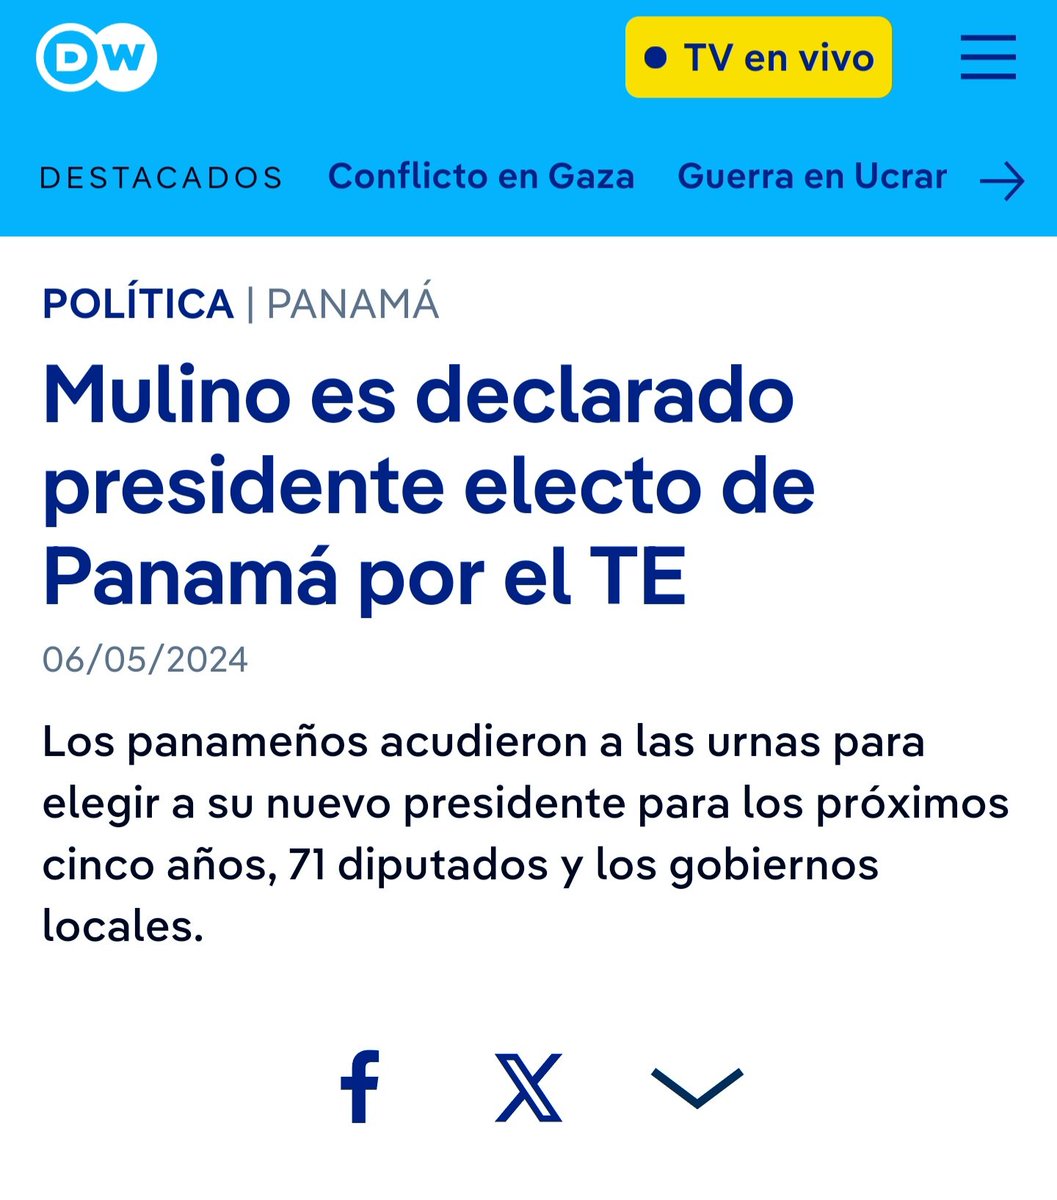 Felicidades al pueblo de #Panama por una elección democrática, participativa y en paz. Le deseamos éxitos al Presidente electo @JoseRaulMulino, quien obtuvo un claro triunfo, y que su gobierno sea un baluarte en la lucha democrática regional.